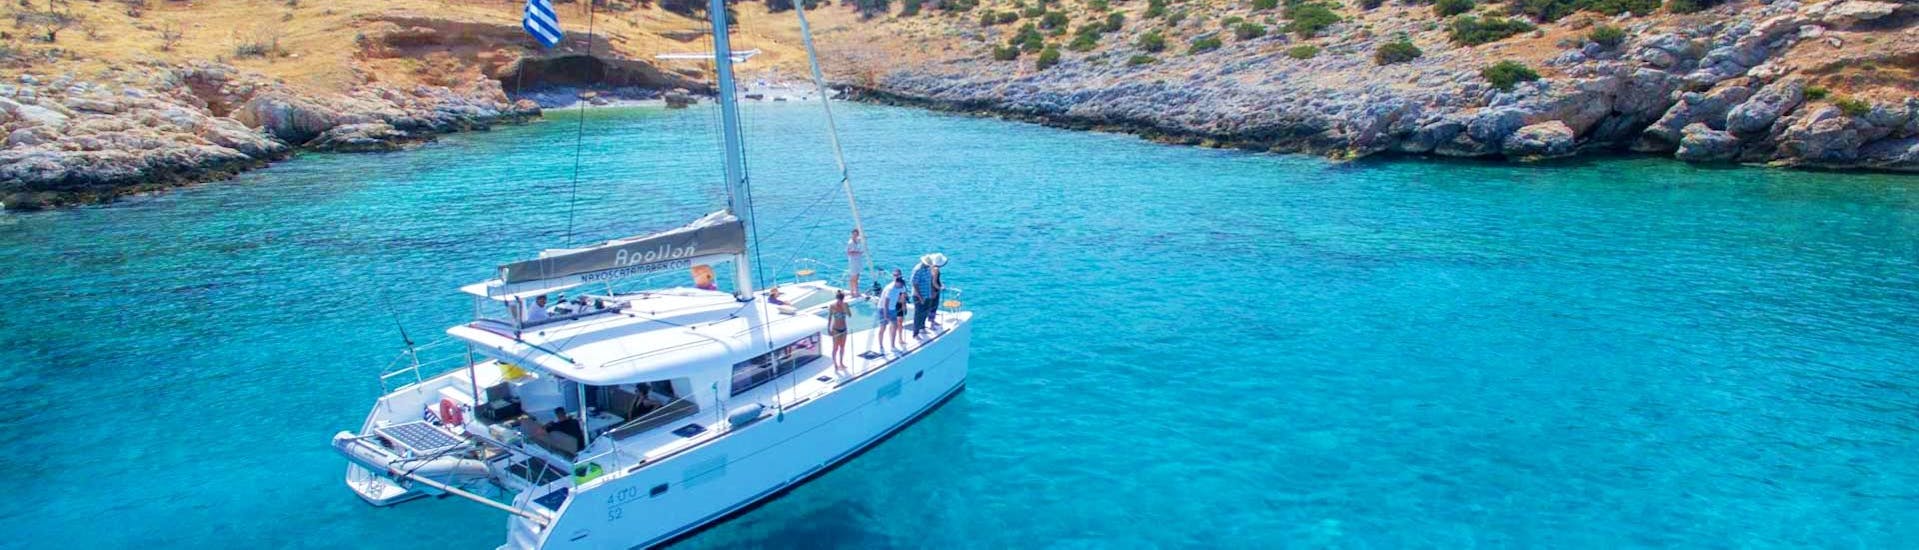 De catamaran Apollon van Naxos Catamaran vaart langs de rotsachtige kust van de Cycladen tijdens de privé zeiltocht op een luxe catamaran vanaf Naxos.